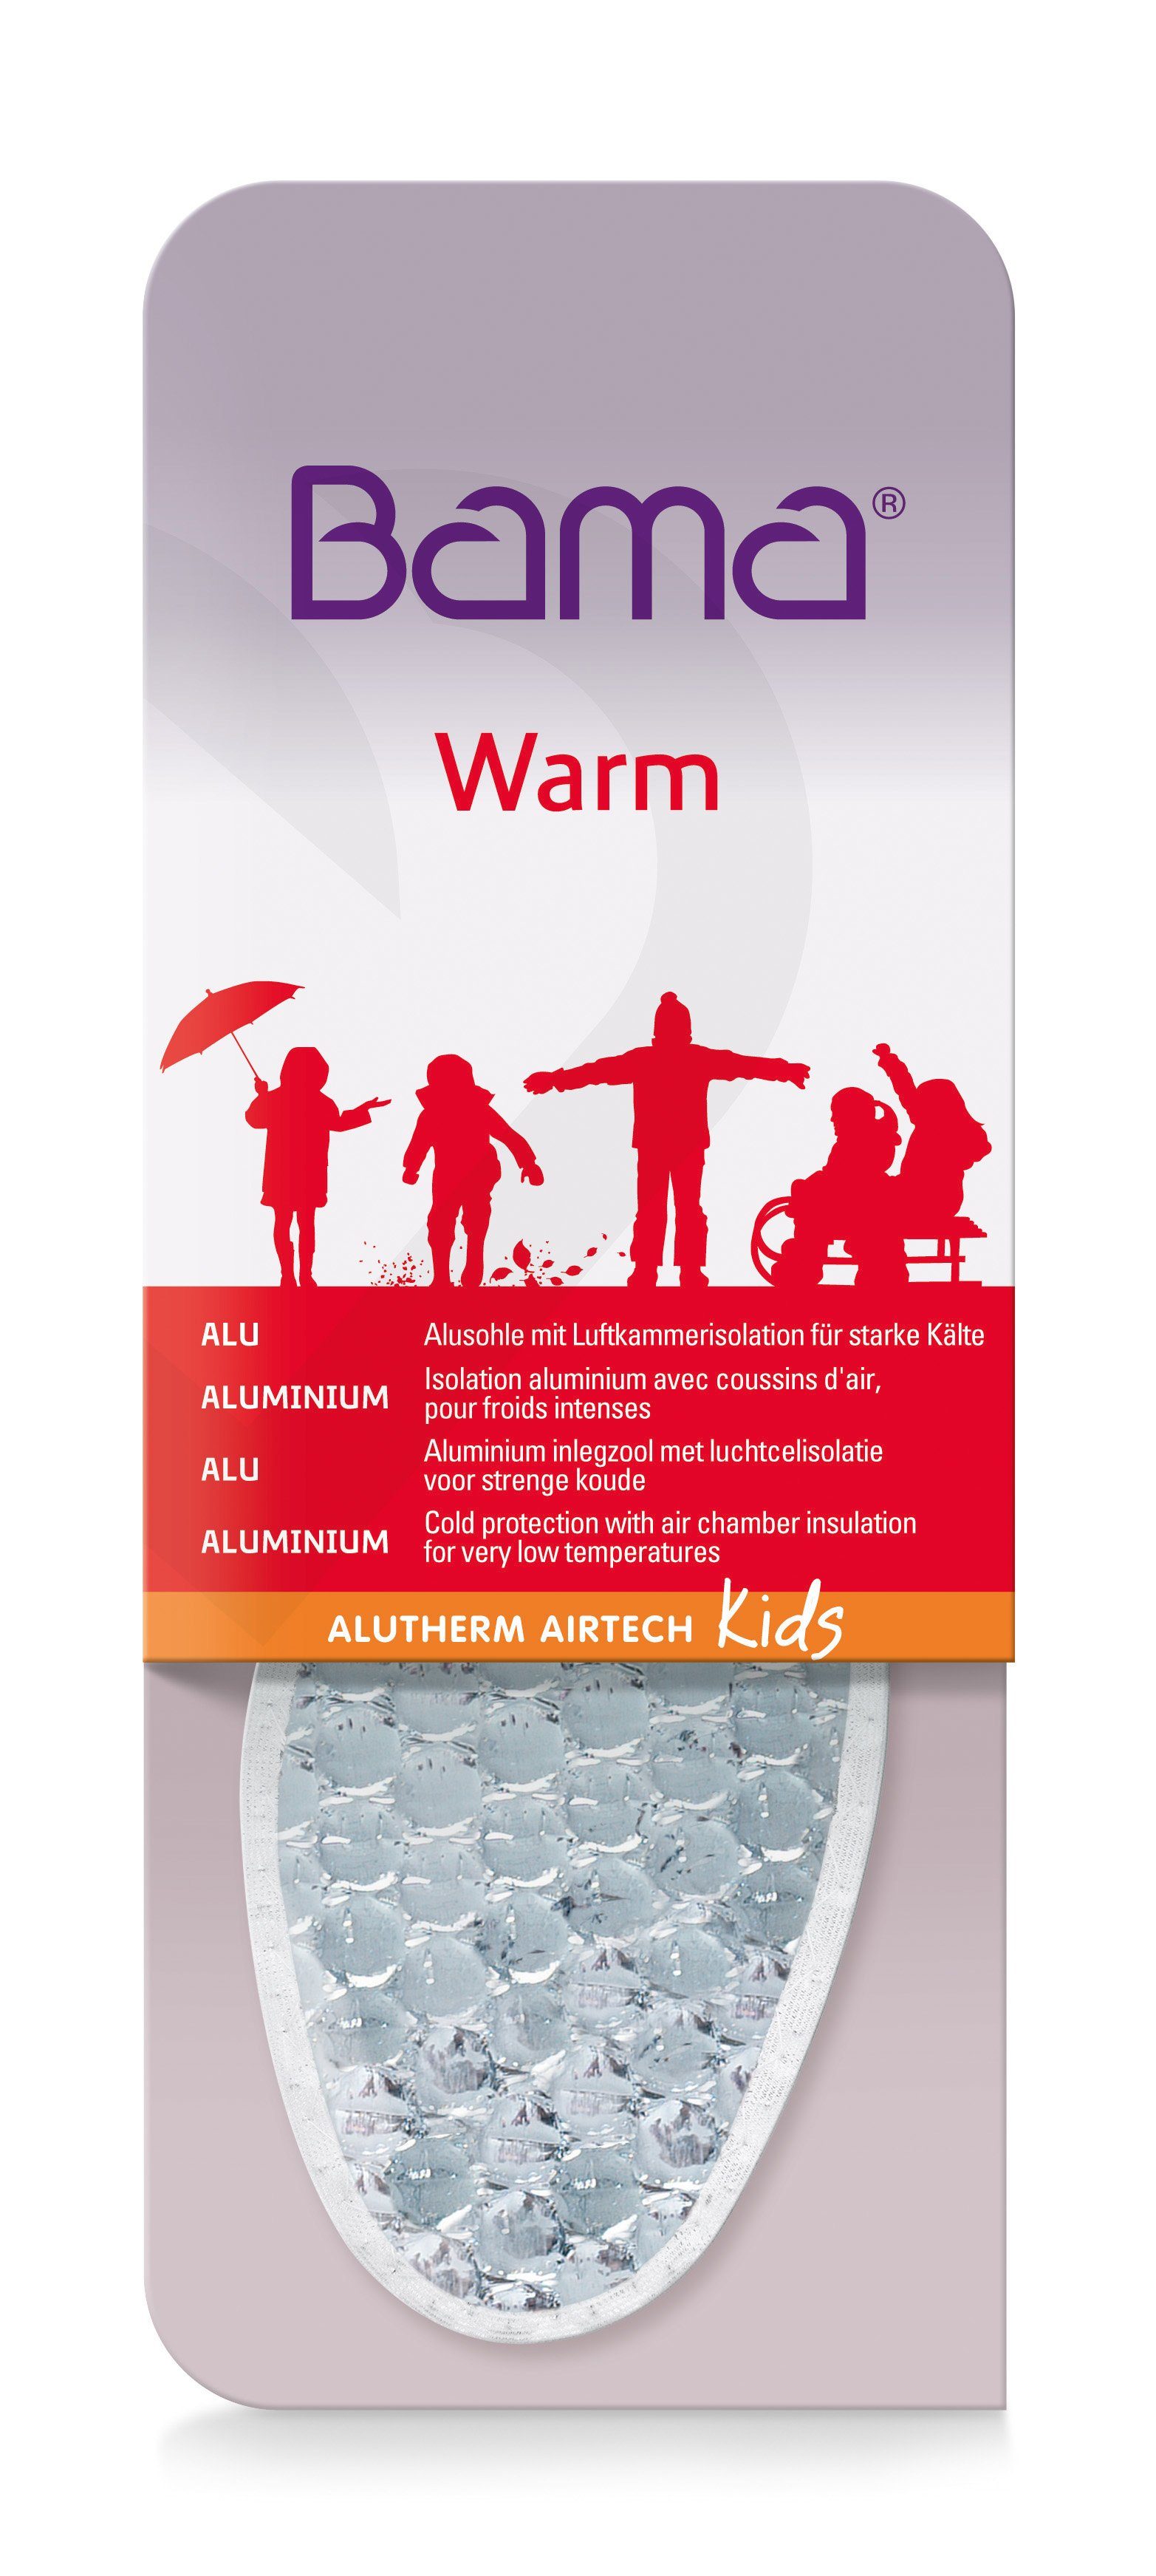 BAMA Group Thermosohlen Alutherm Airtech Kids - mit Luftkammerisolation für starke Kälte